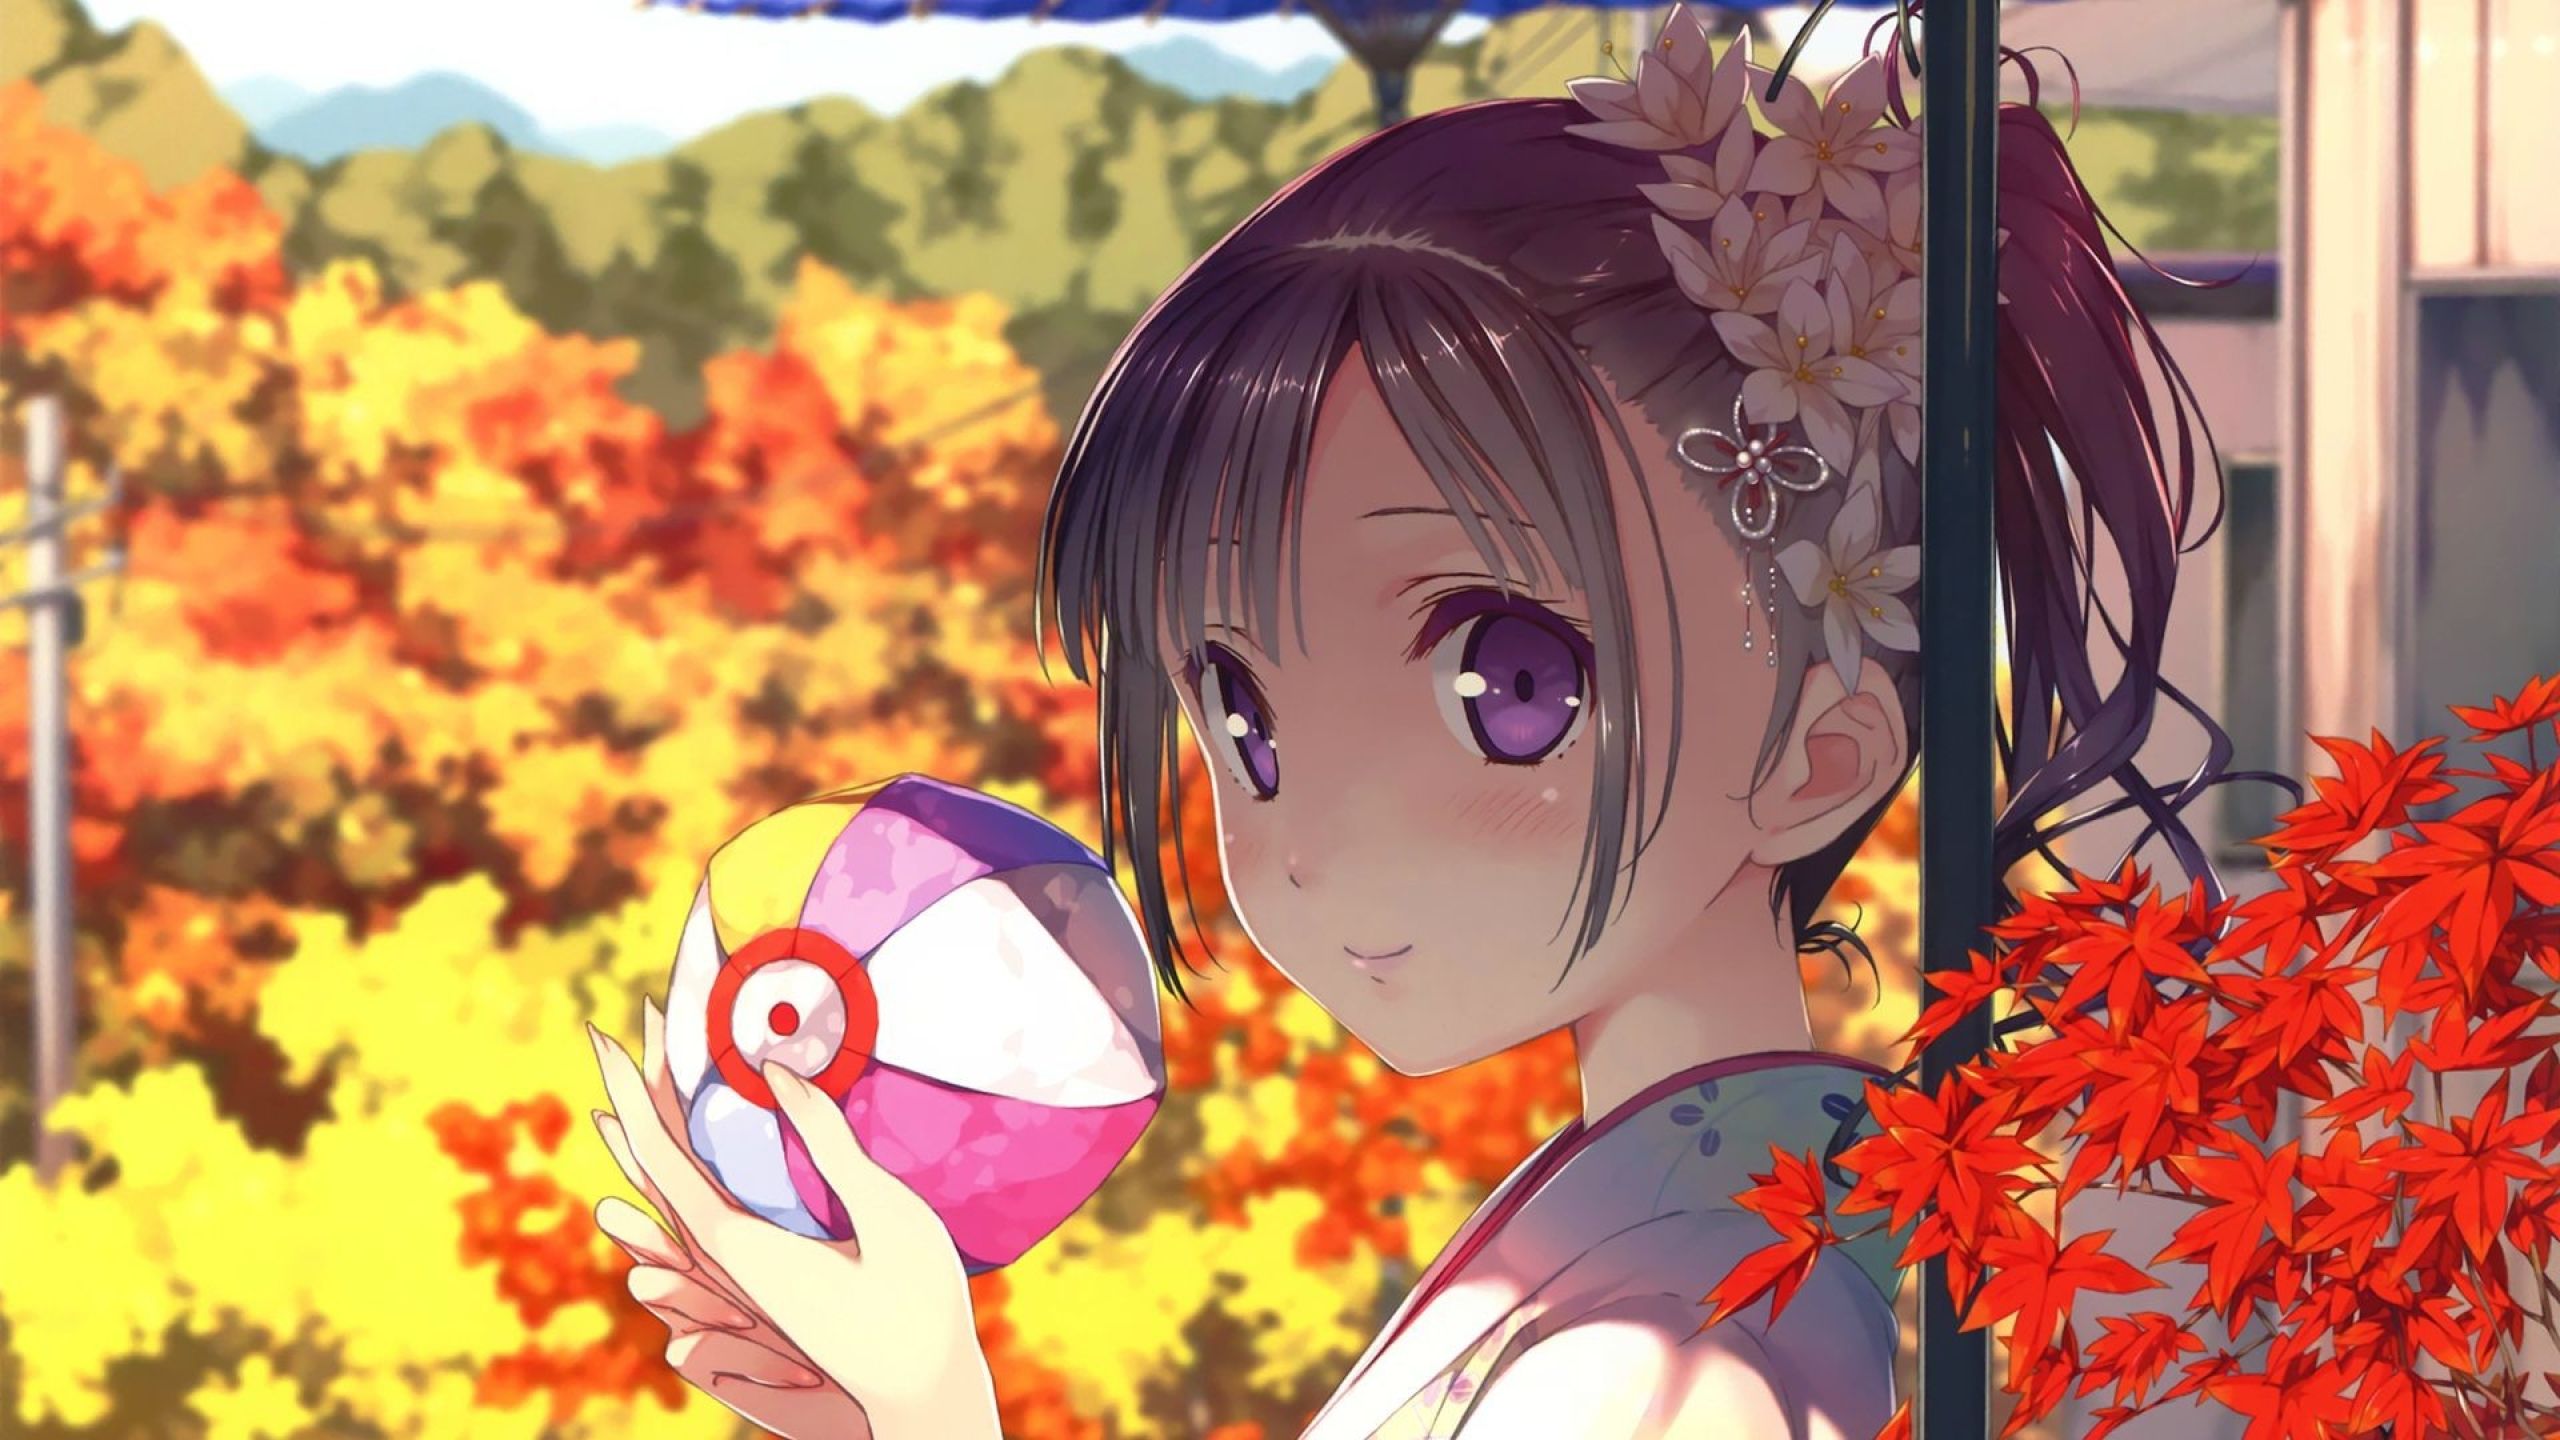 girl, kawaii, anime 1440P Resolution Wallpaper, HD Anime 4K Wallpaper, Image, Photo and Background